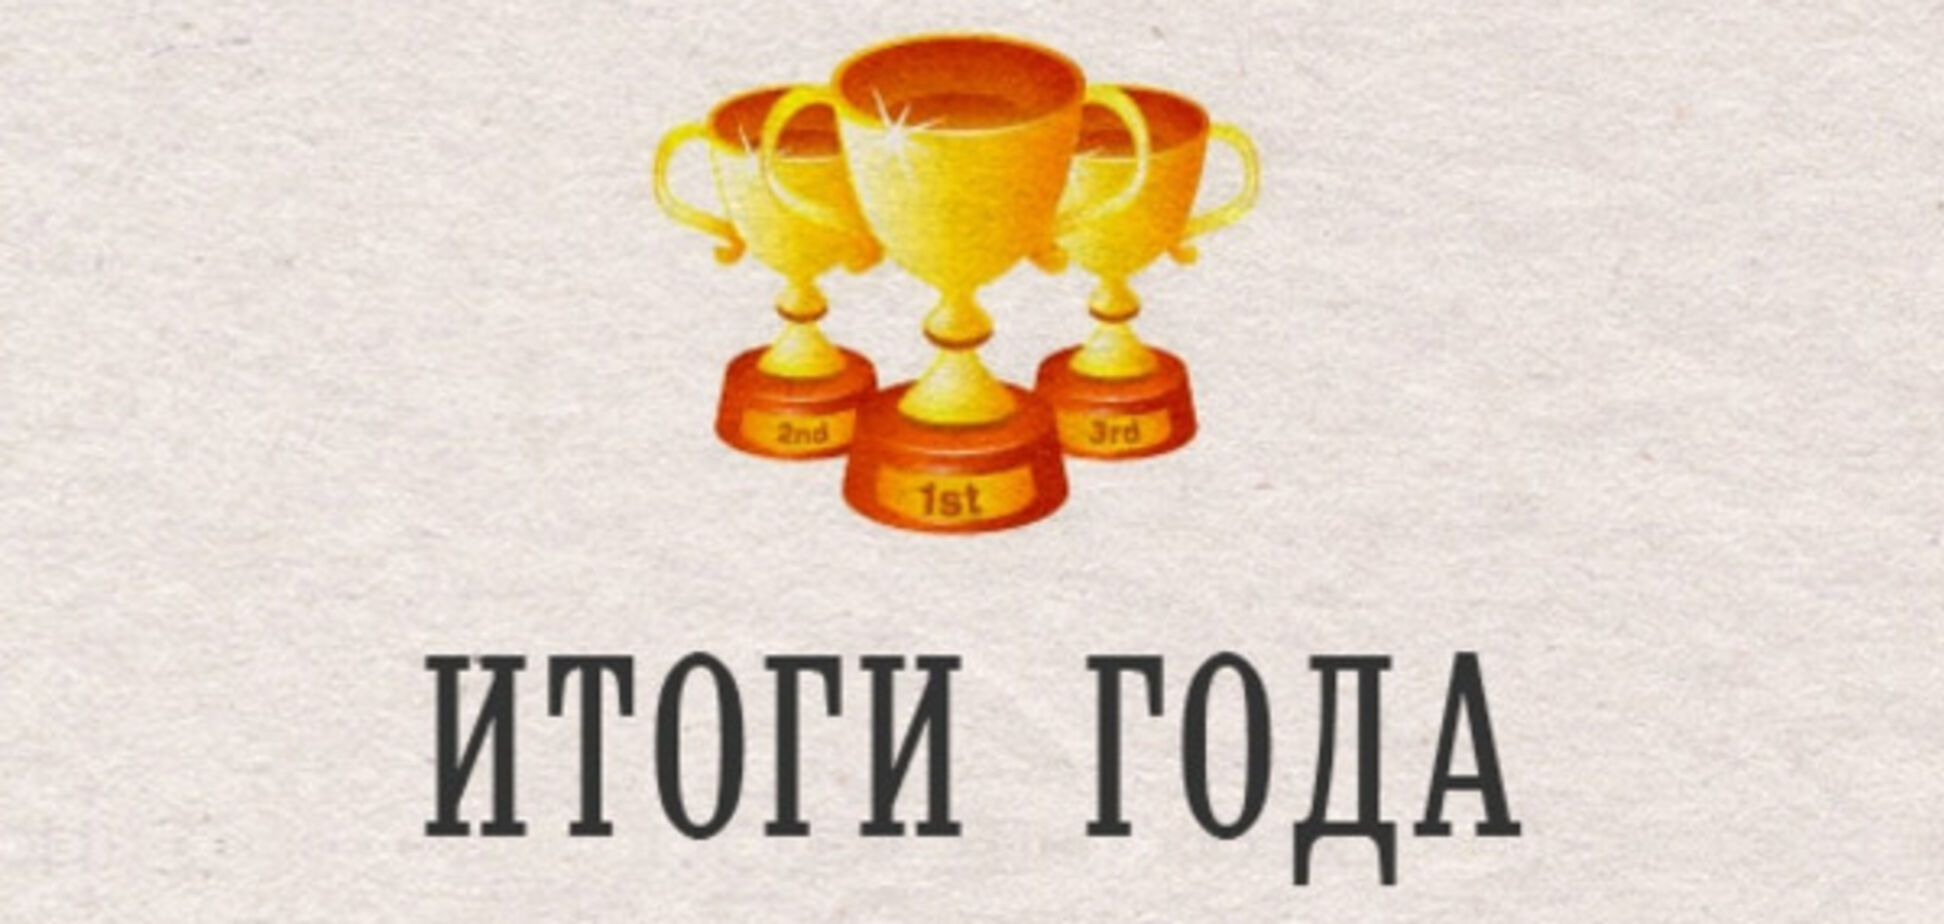 Итоги года для Украины. Номинации и победители